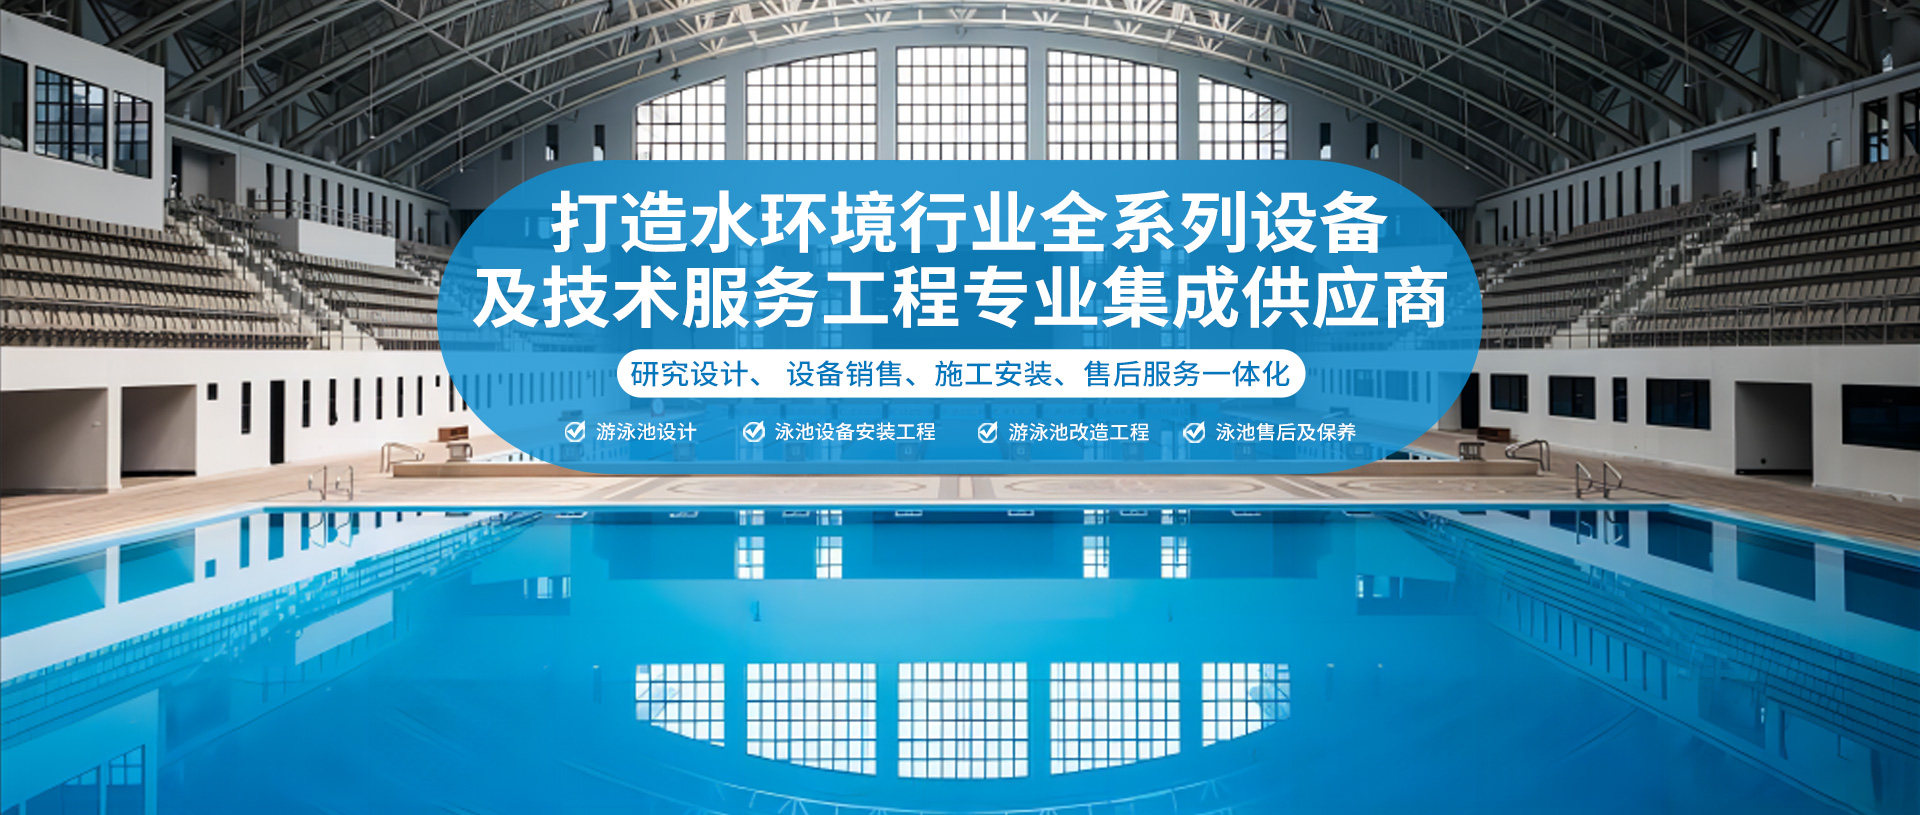 杭州互众体育设施工程有限公司